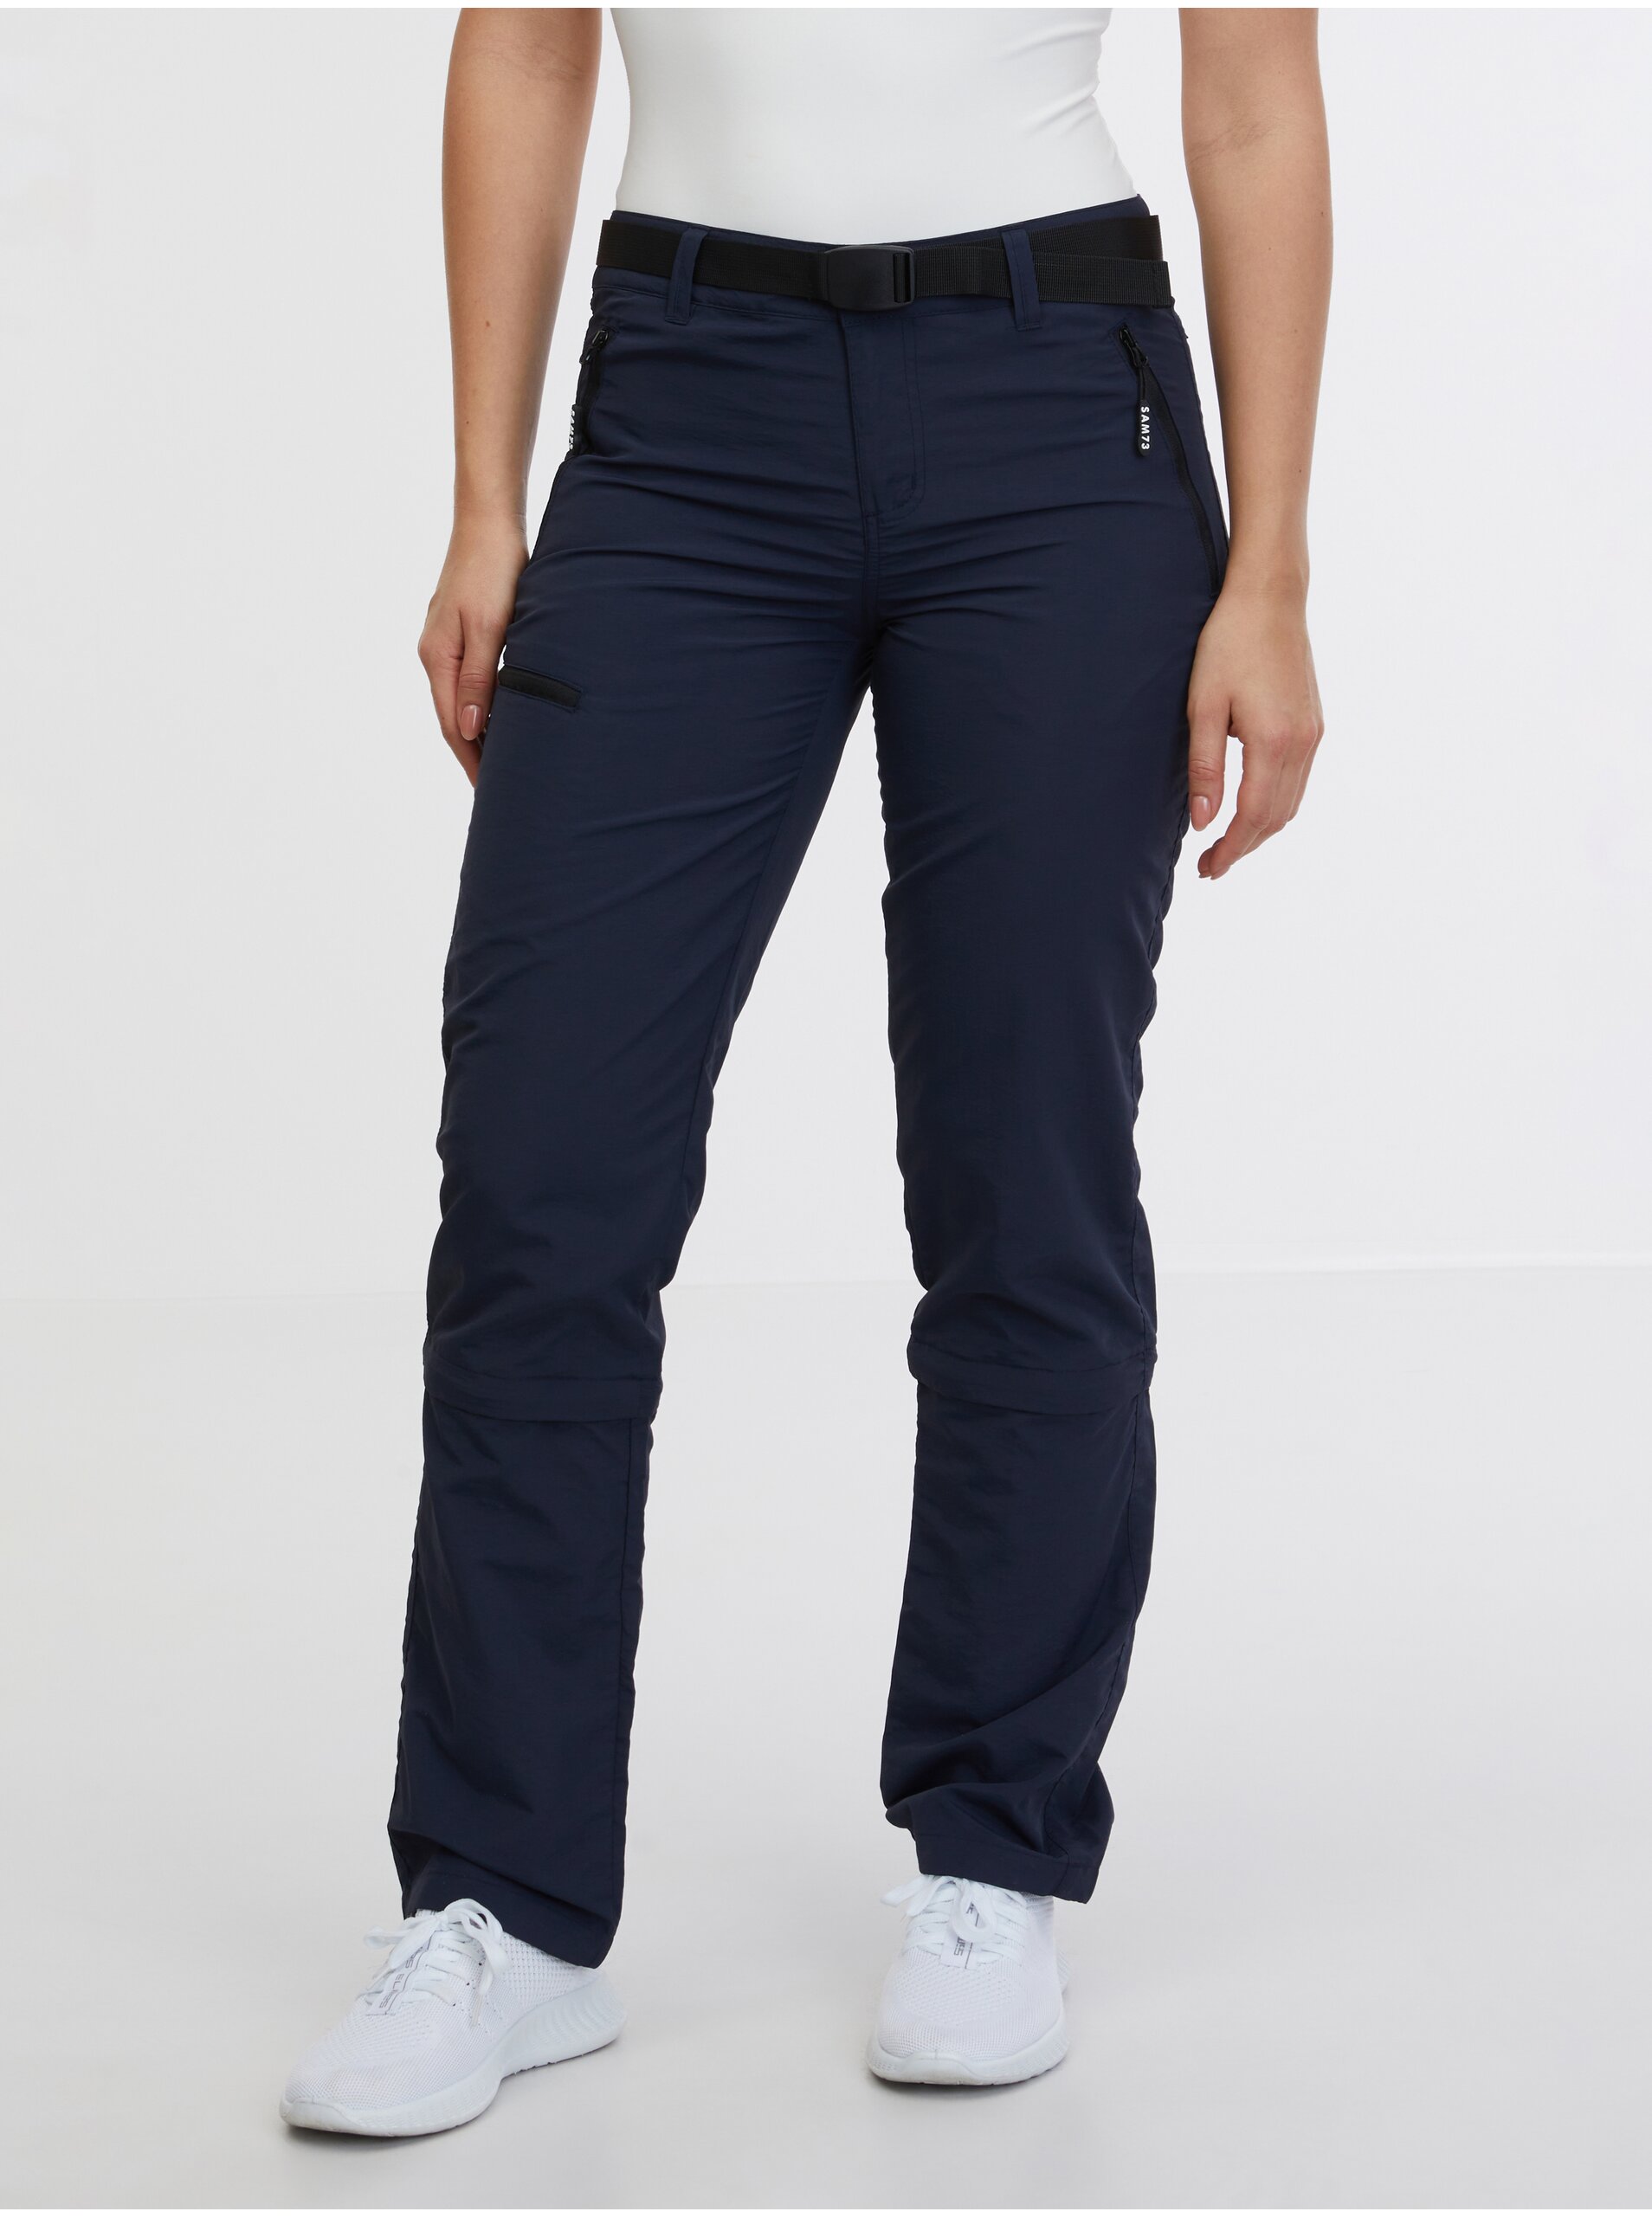 E-shop Tmavě modré dámské kalhoty s odepínacími nohavicemi SAM 73 Flor